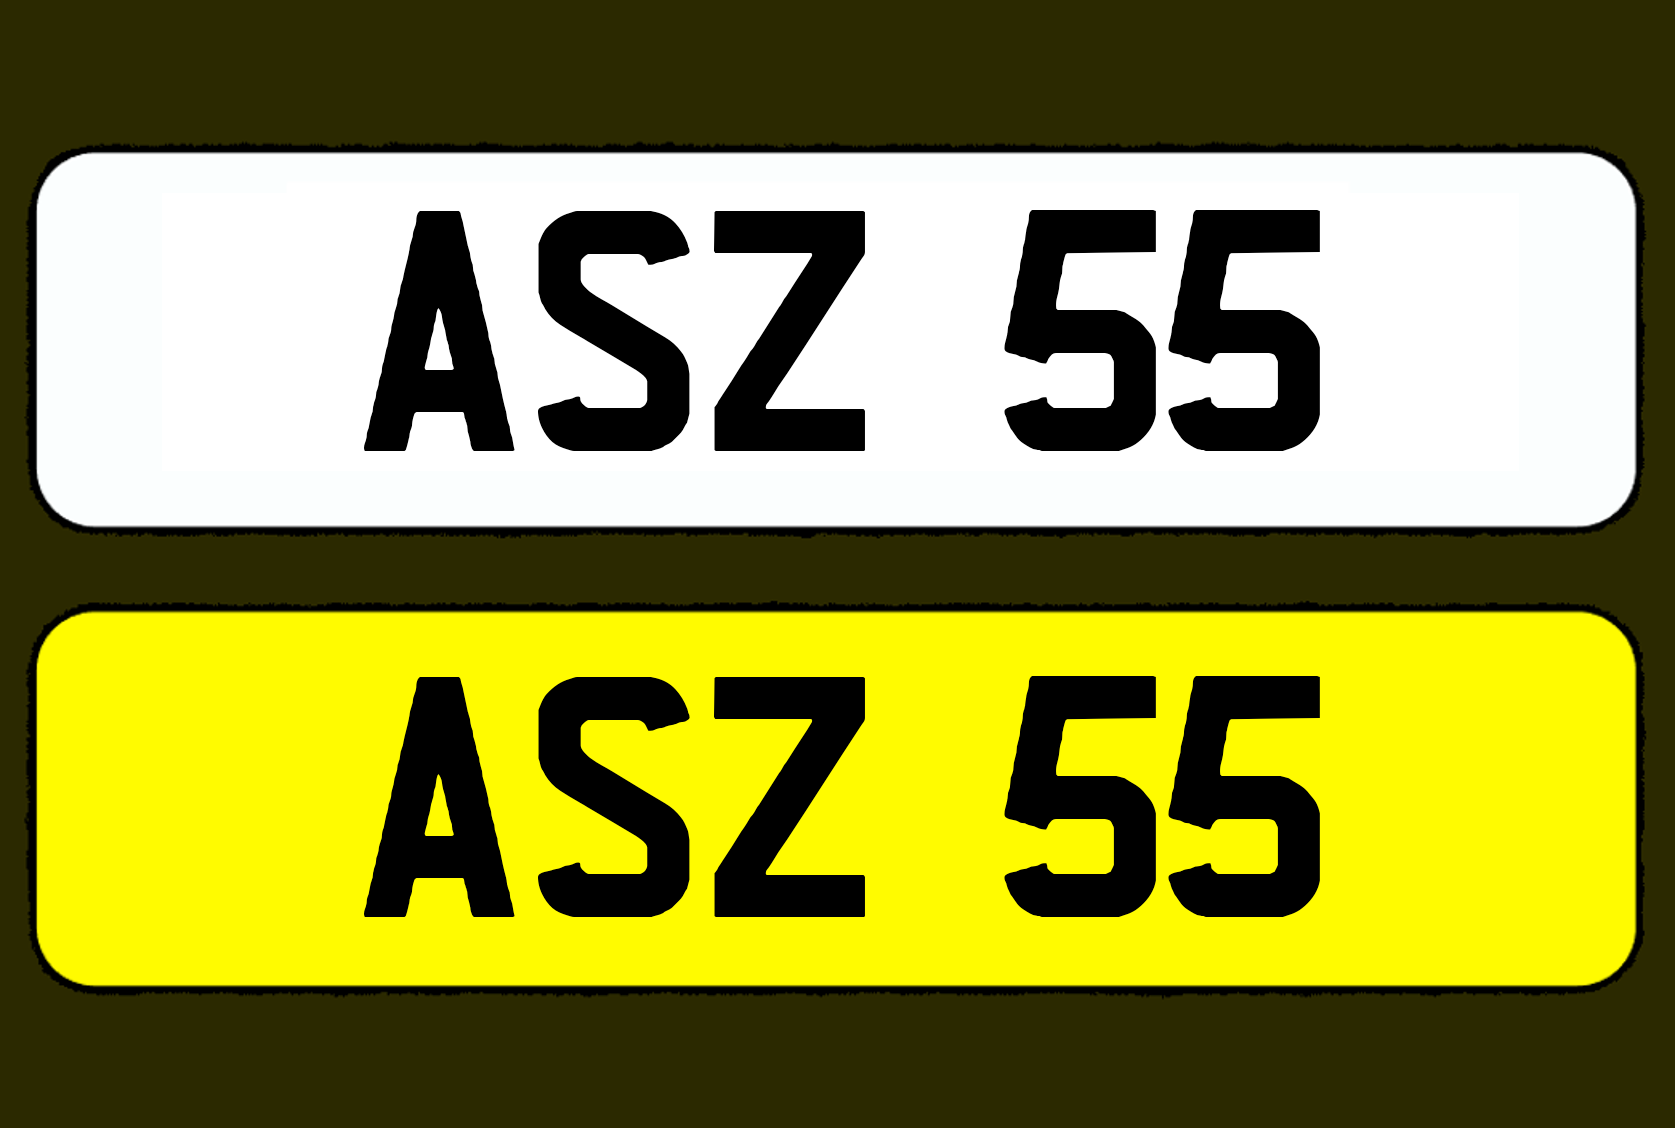 ASZ 55